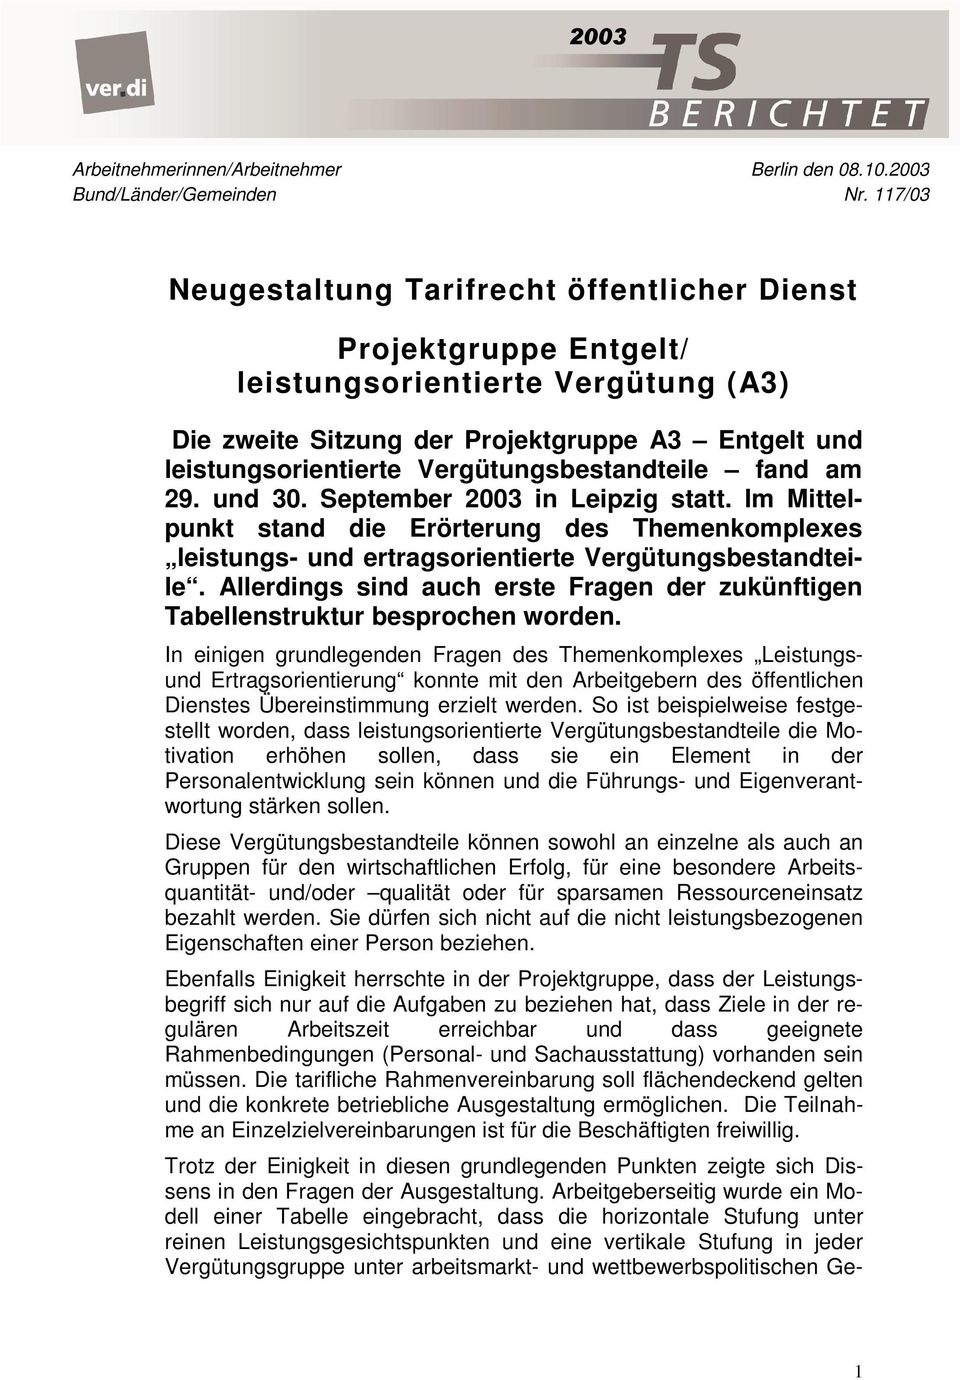 Vergütungsbestandteile fand am 29. und 30. September 2003 in Leipzig statt. Im Mittelpunkt stand die Erörterung des Themenkomplexes leistungs- und ertragsorientierte Vergütungsbestandteile.